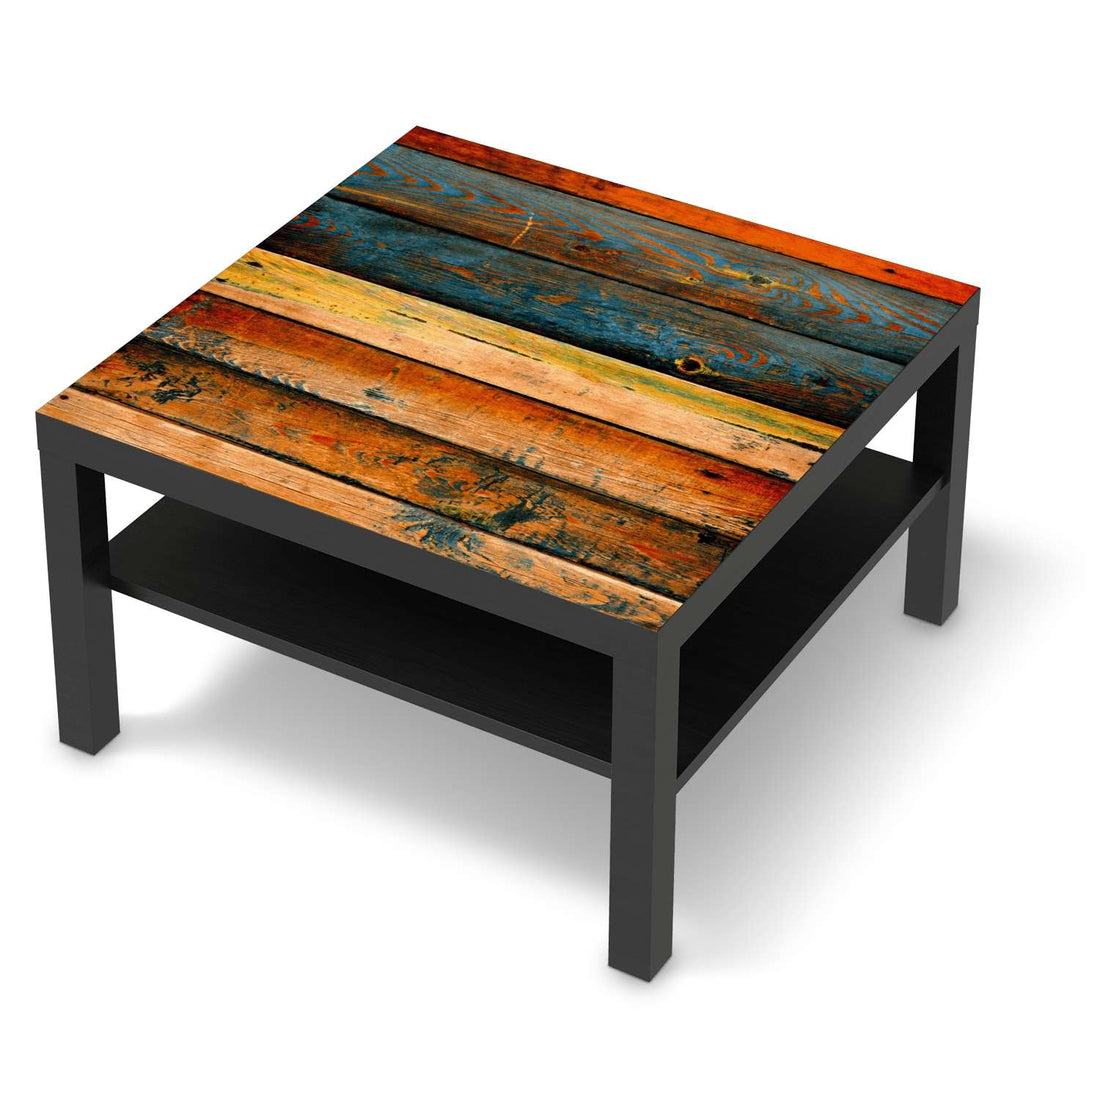 Selbstklebende Folie Wooden - IKEA Lack Tisch 78x78 cm - schwarz